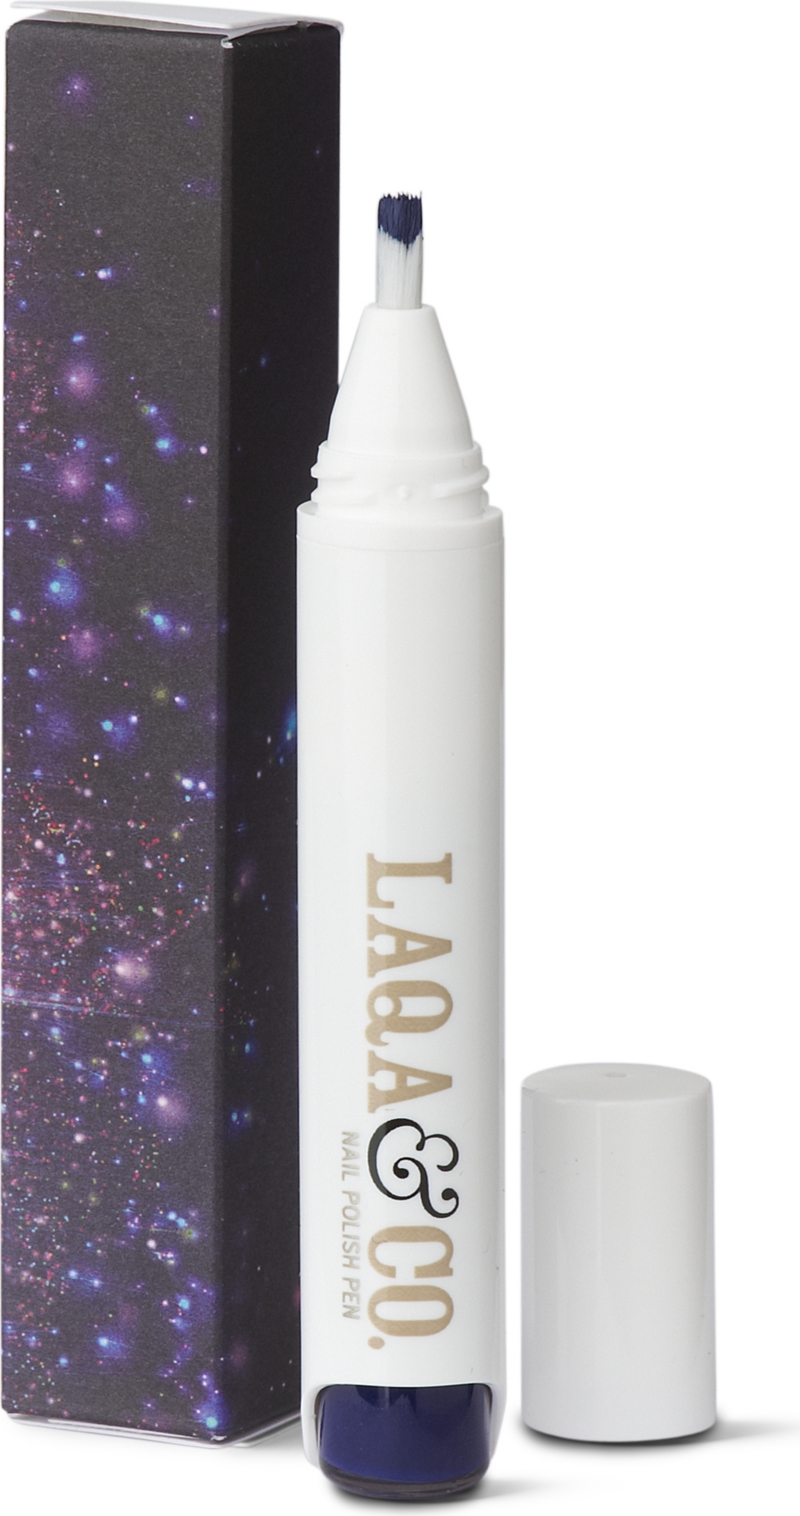 Nail polish pen – Toff   LAQA & CO   Nail polishes   Shop Nails 